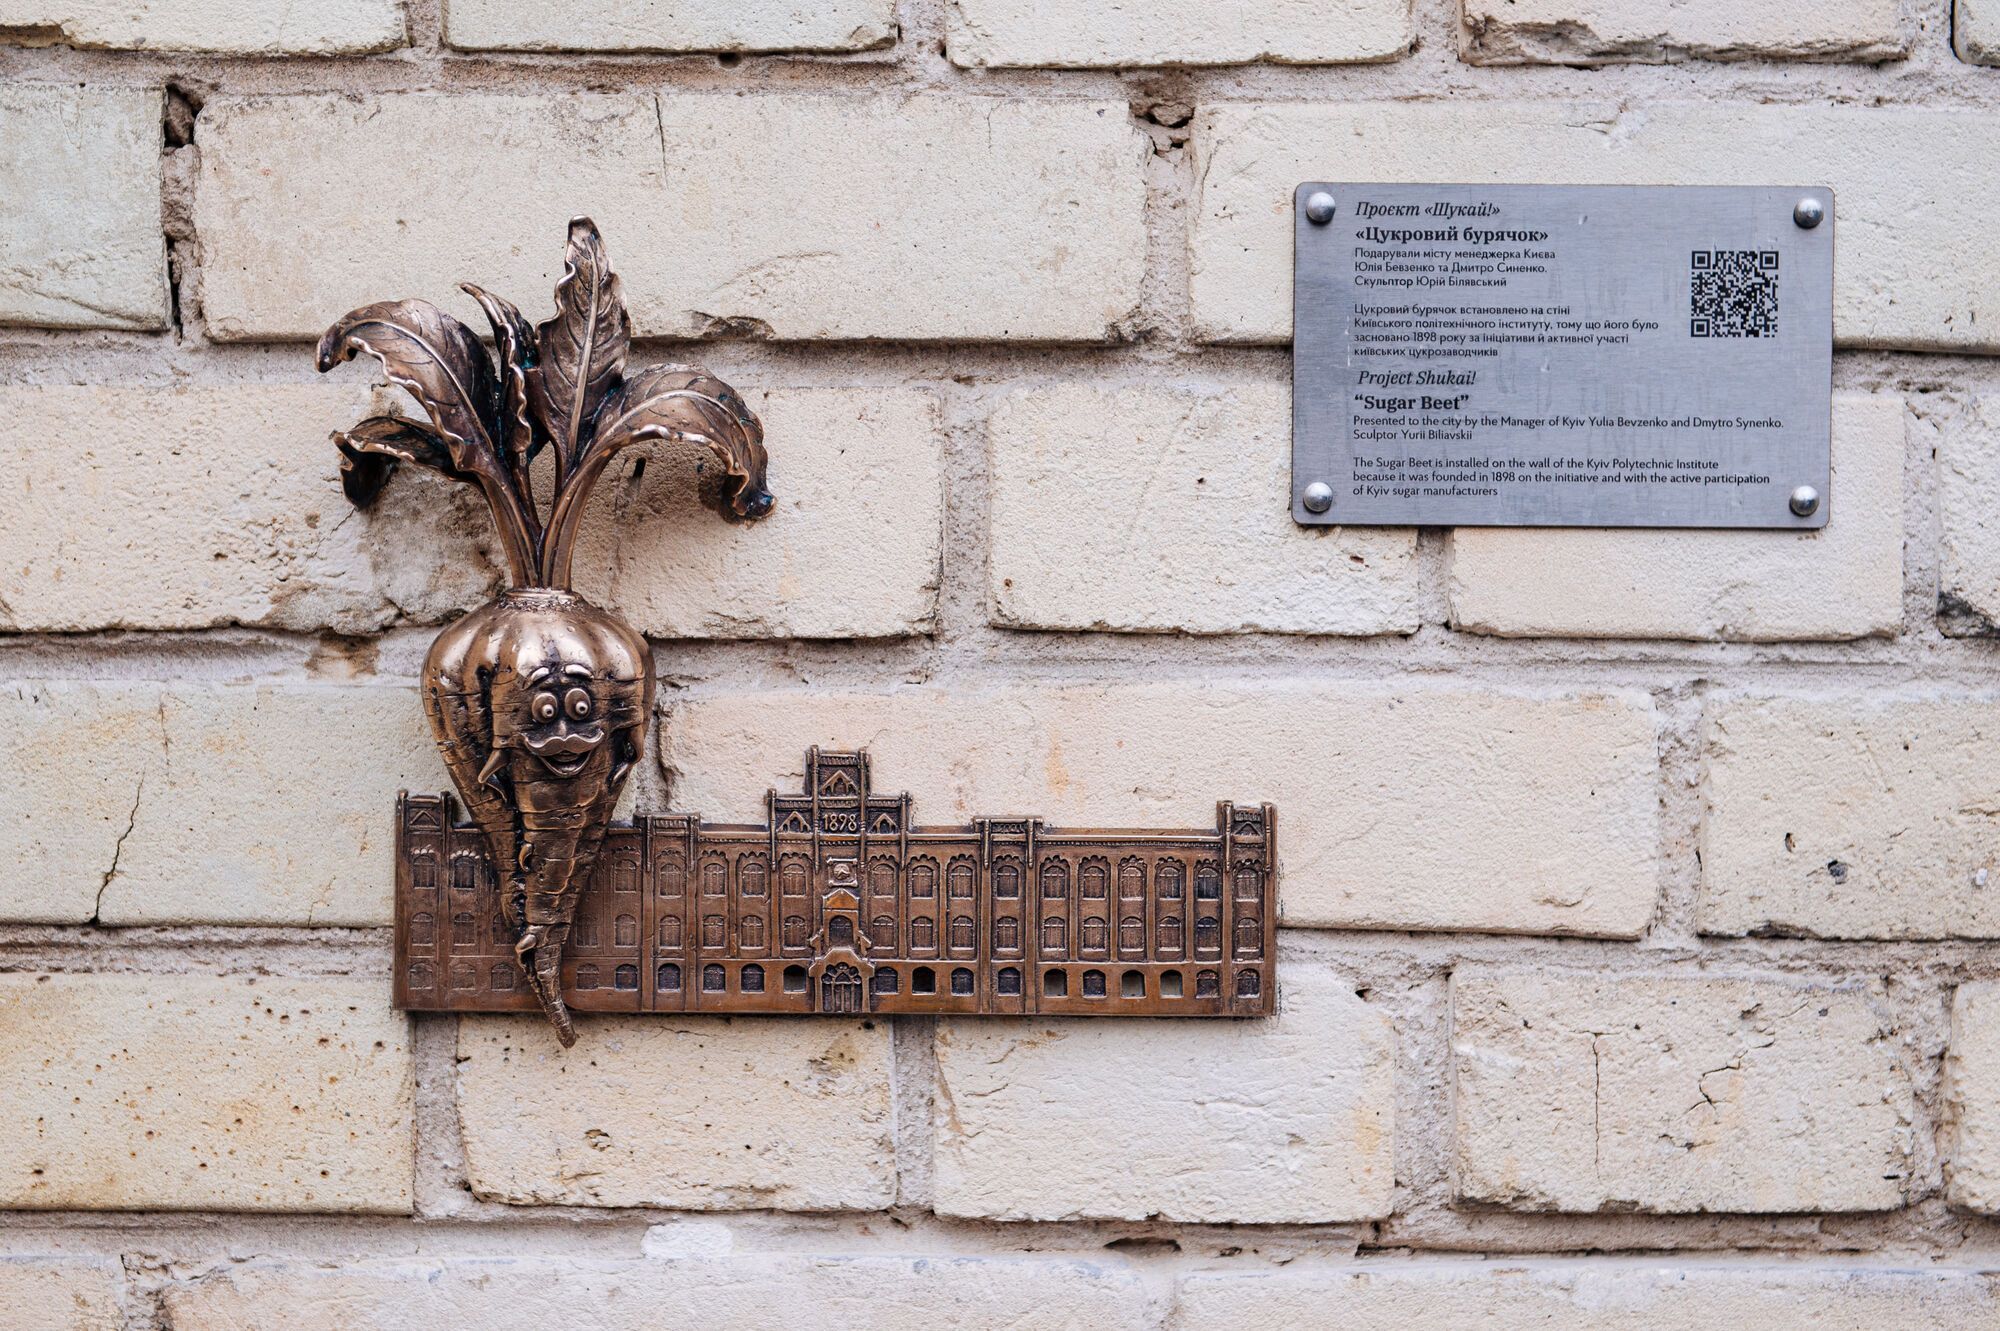 Проект "Шукай!" В Киеве появилась мини-скульптура, посвященная меценатам-сахарозаводчикам